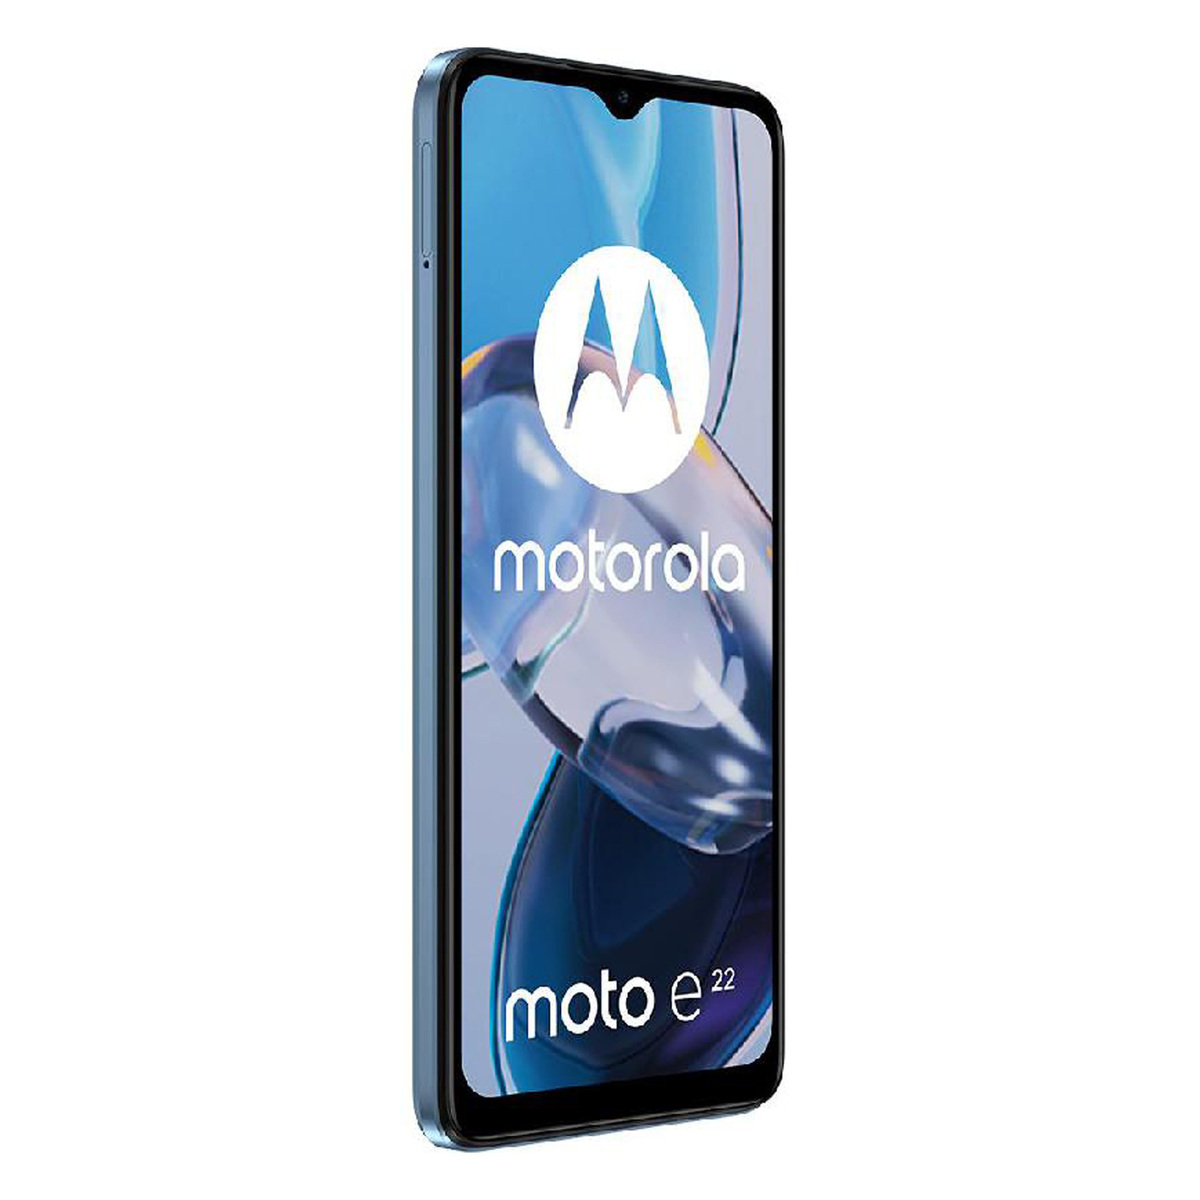 Motorola Moto E22 Dual Nano SIM 4G Smartphone, 4 GB RAM, 64 GB Storage, Crystal Blue